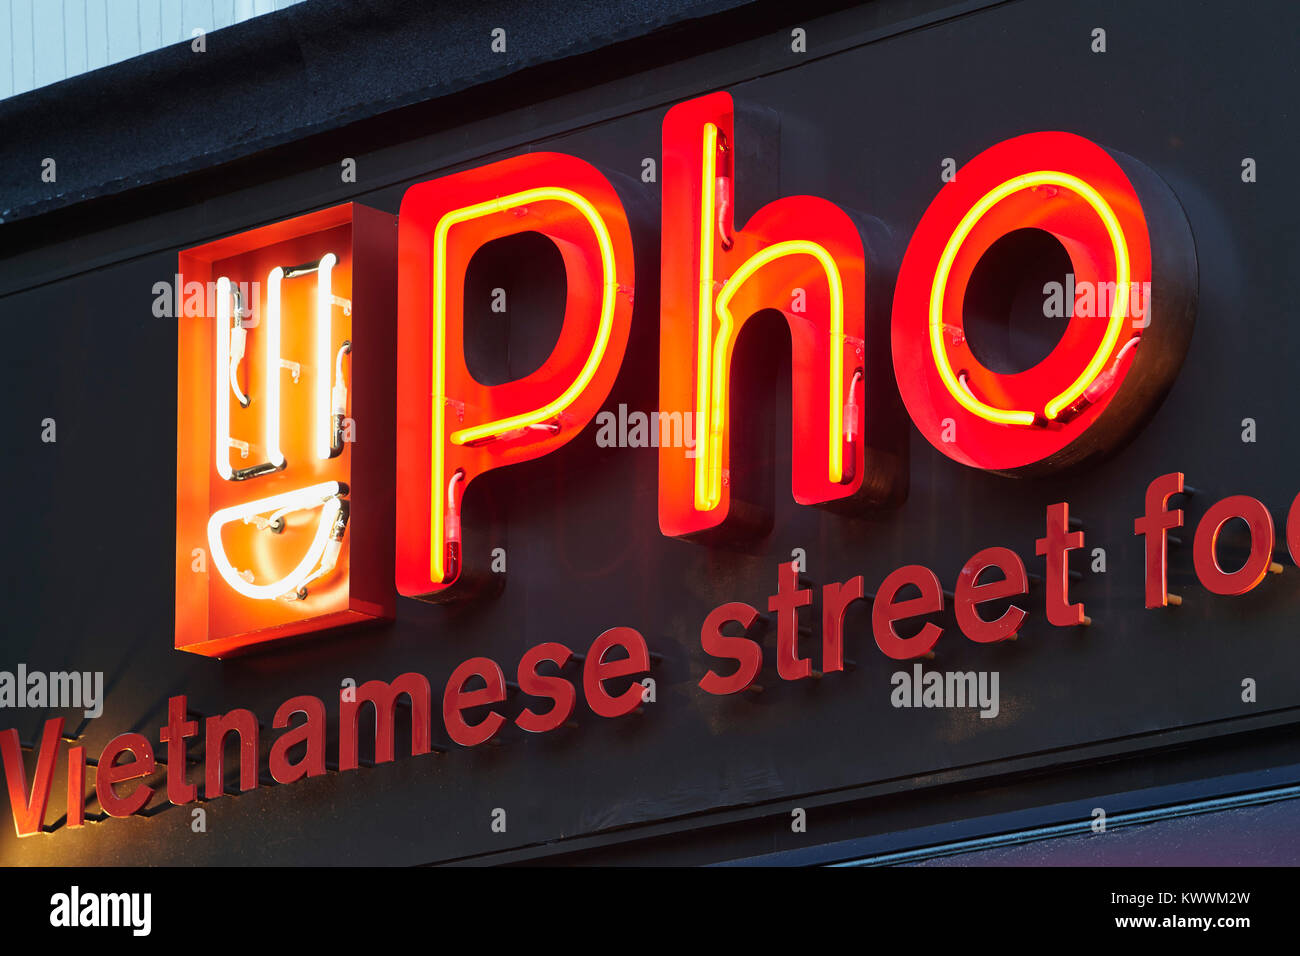 Pho vietnamesische Street Food Zeichen, Ealing Broadway, London UK Stockfoto